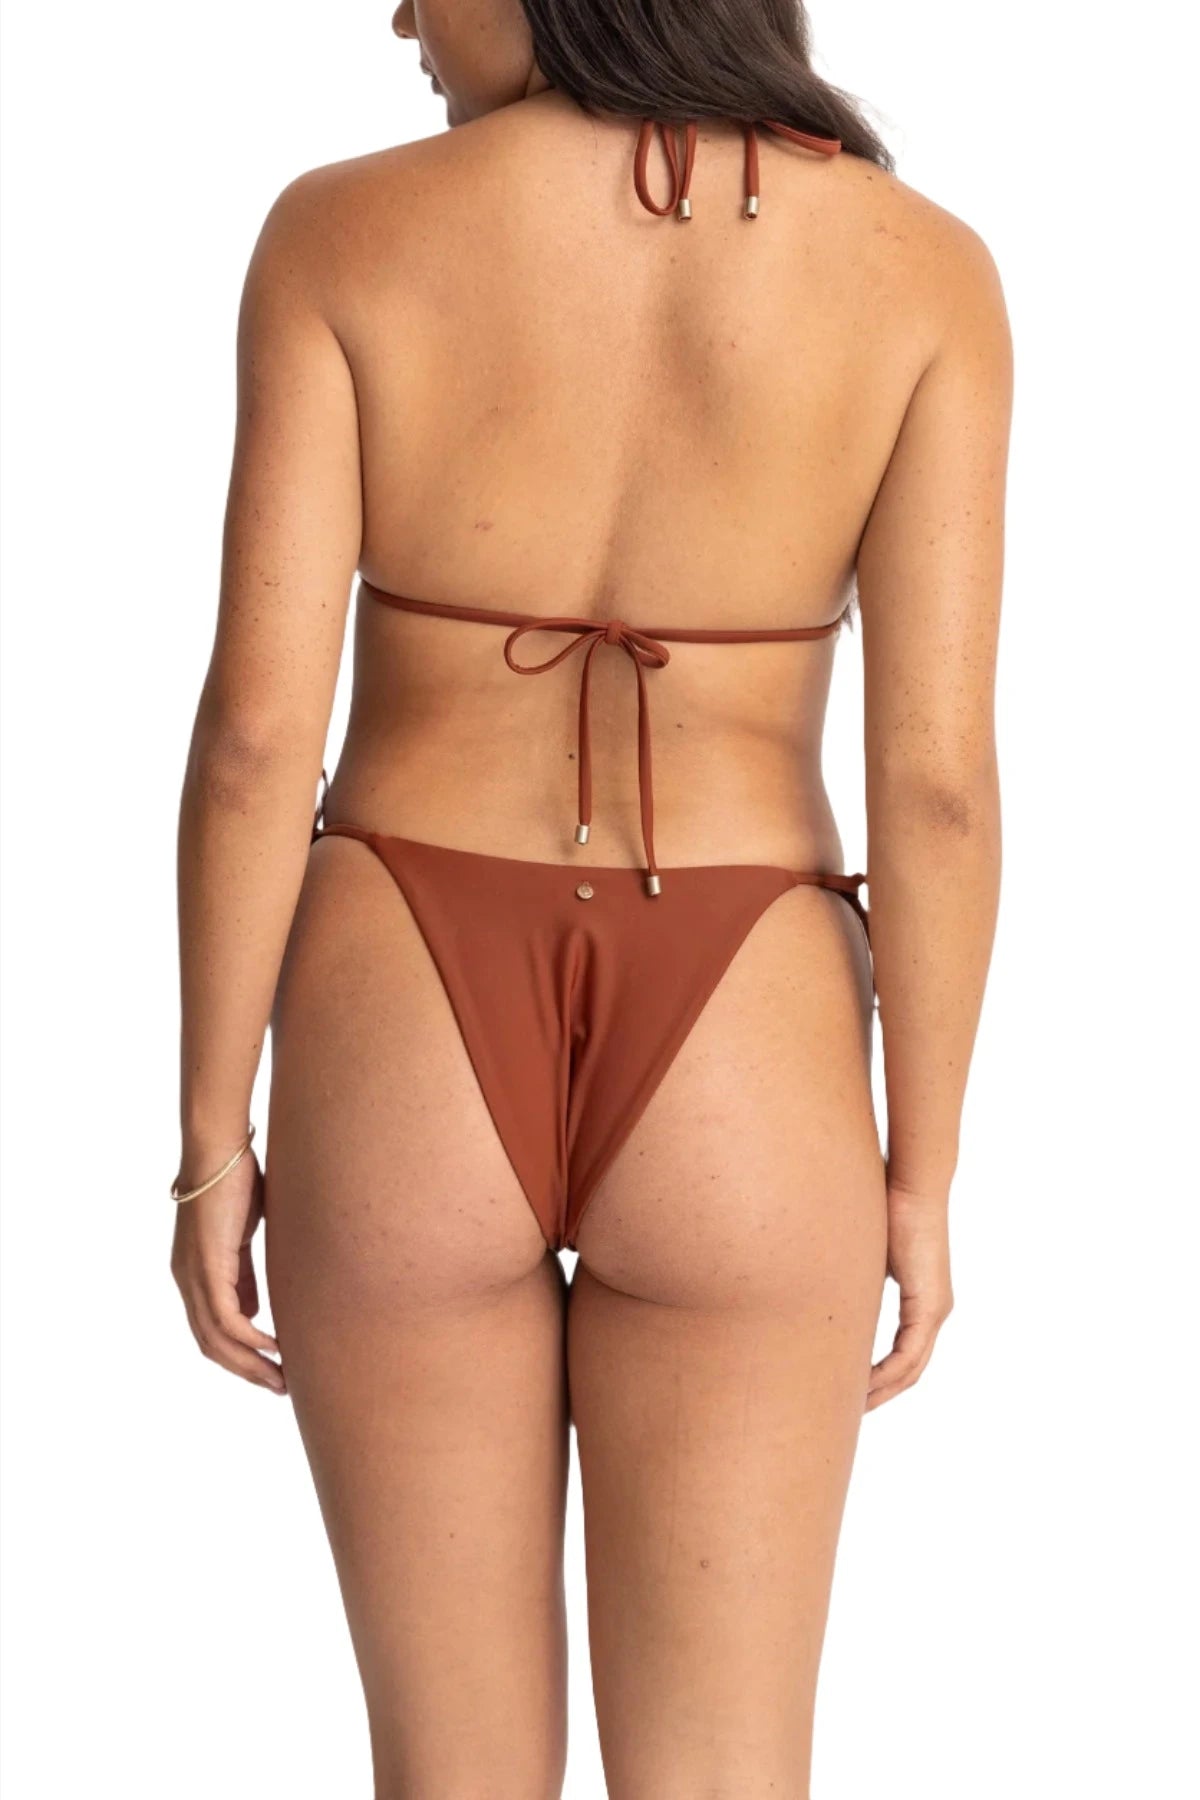 RHYTHM Women's Classic Tie Side High Cut Bikini Bottom Rust Women's Bikini Bottoms Rhythm 